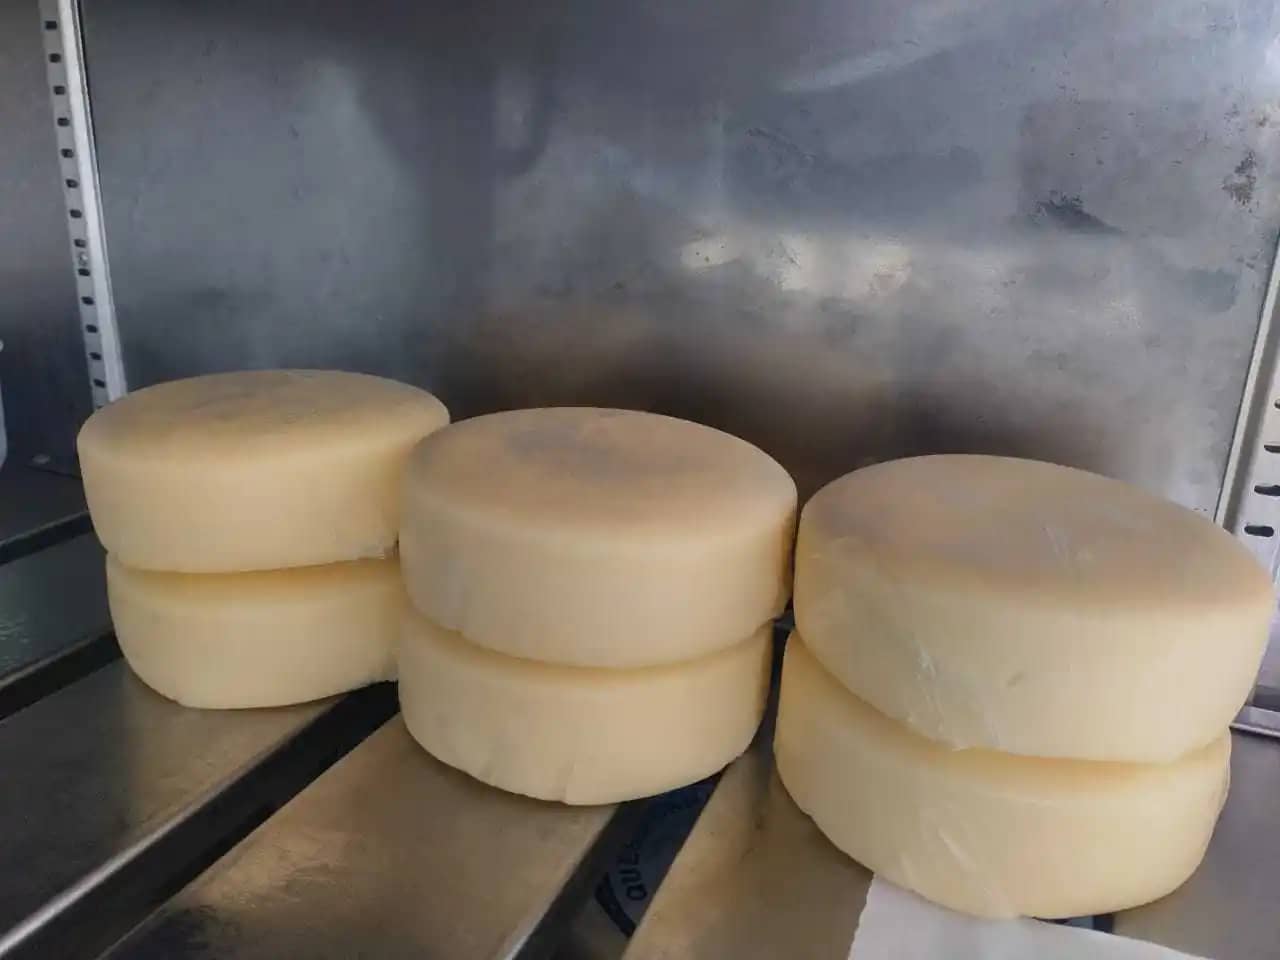 Venta de queso doble crema en bloque x 2400 gr